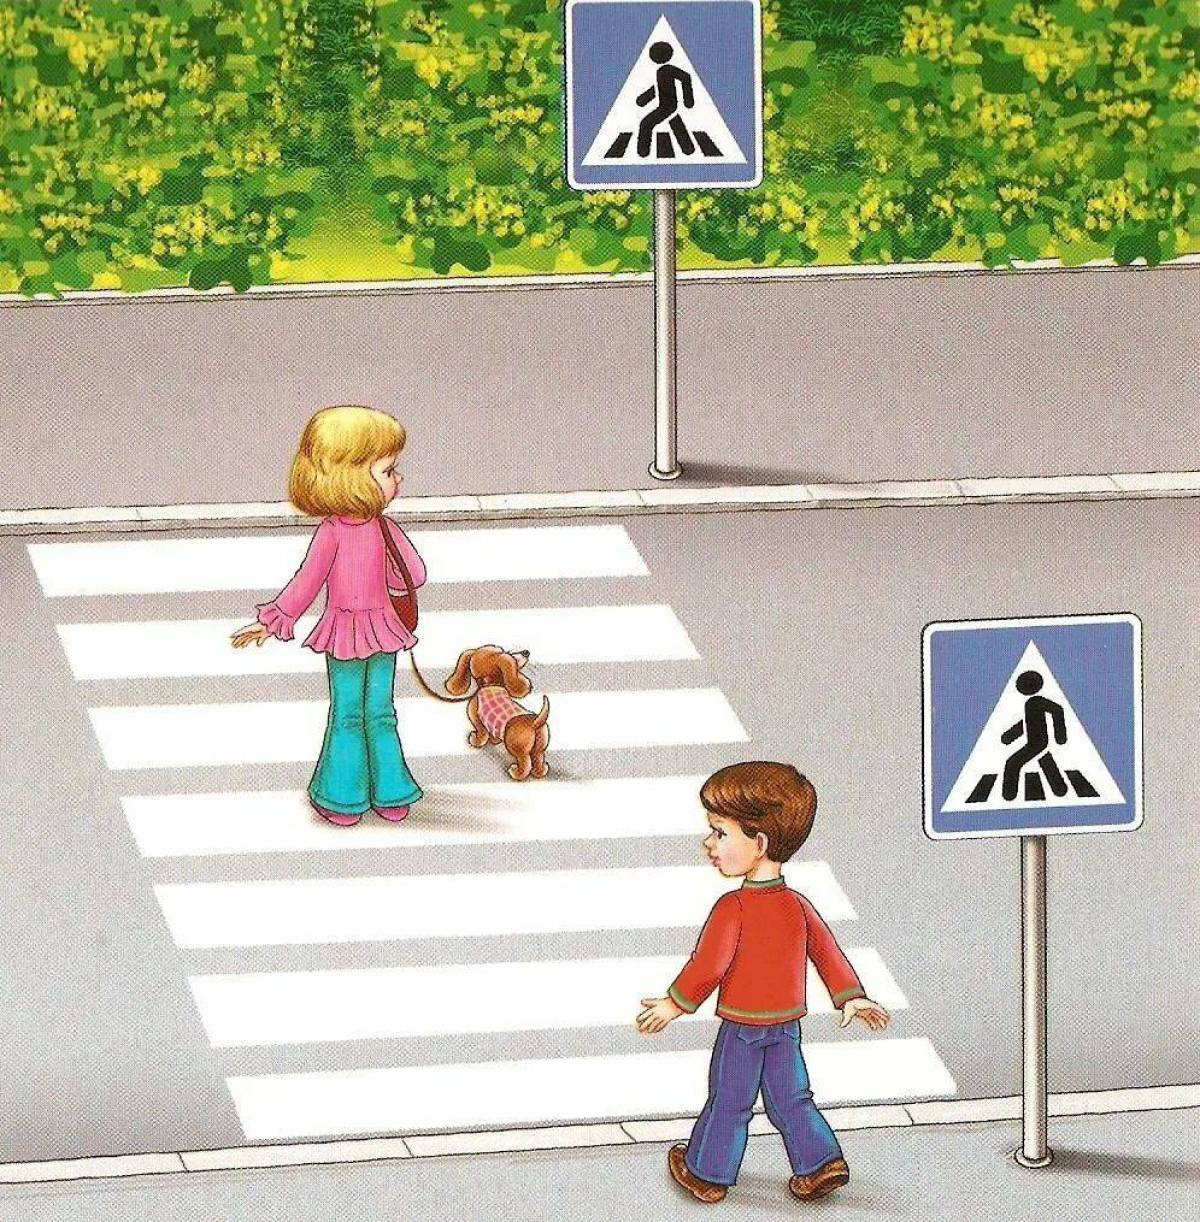 Как переходить улицу ориентироваться на дорожные знаки. Пешеходный переход для детей. Пешеходный переход картинка для детей. Дети пешеходы. Картина пешеходный переход для детей.